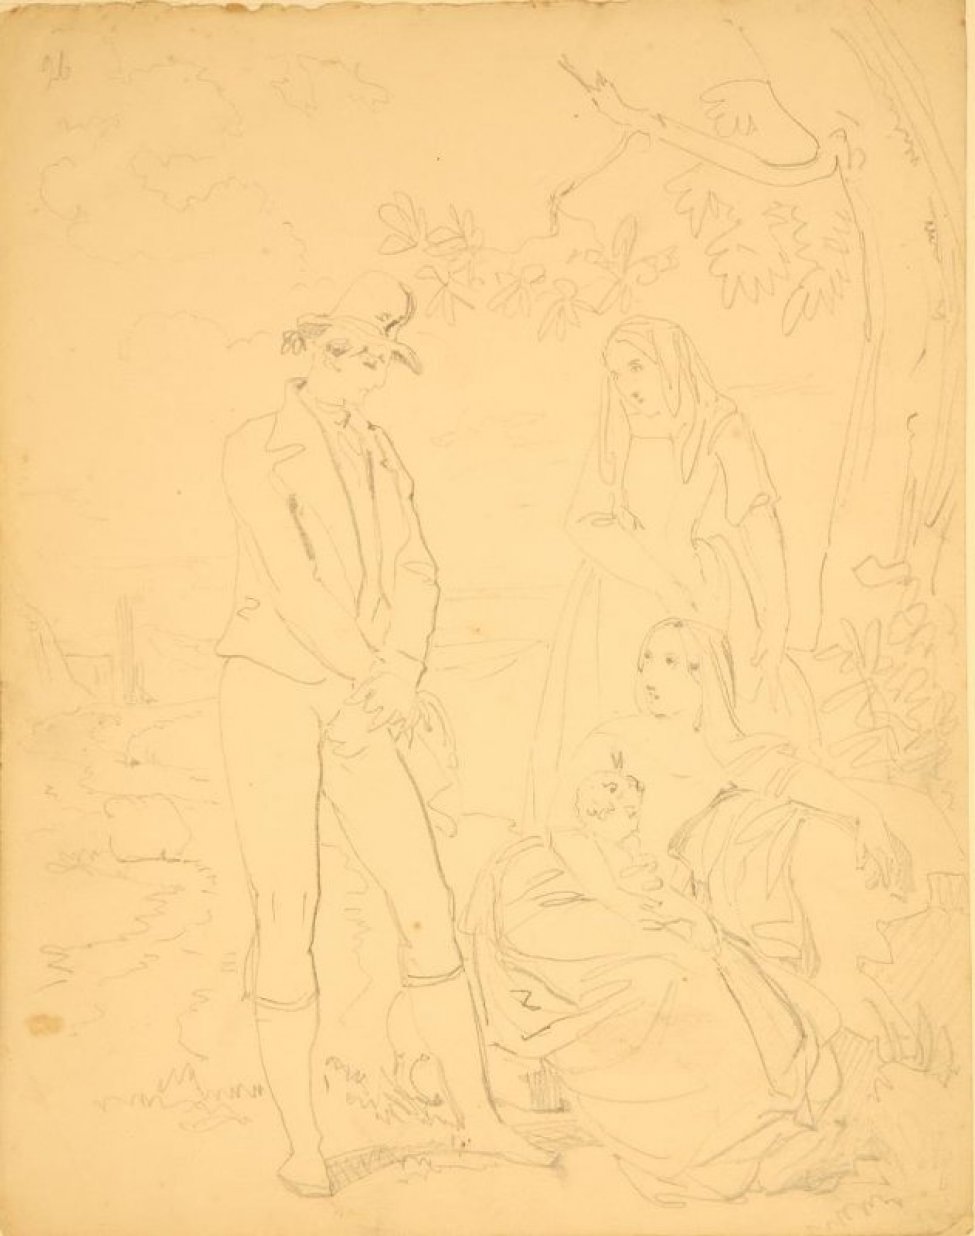 Изображена жанровая сцена. Возле дерева справа - сидит женщина с младенцем, за ними еще одна женщина. Слева от них стоит молодой человек в шляпе. Все в костюмах середины 19 века.